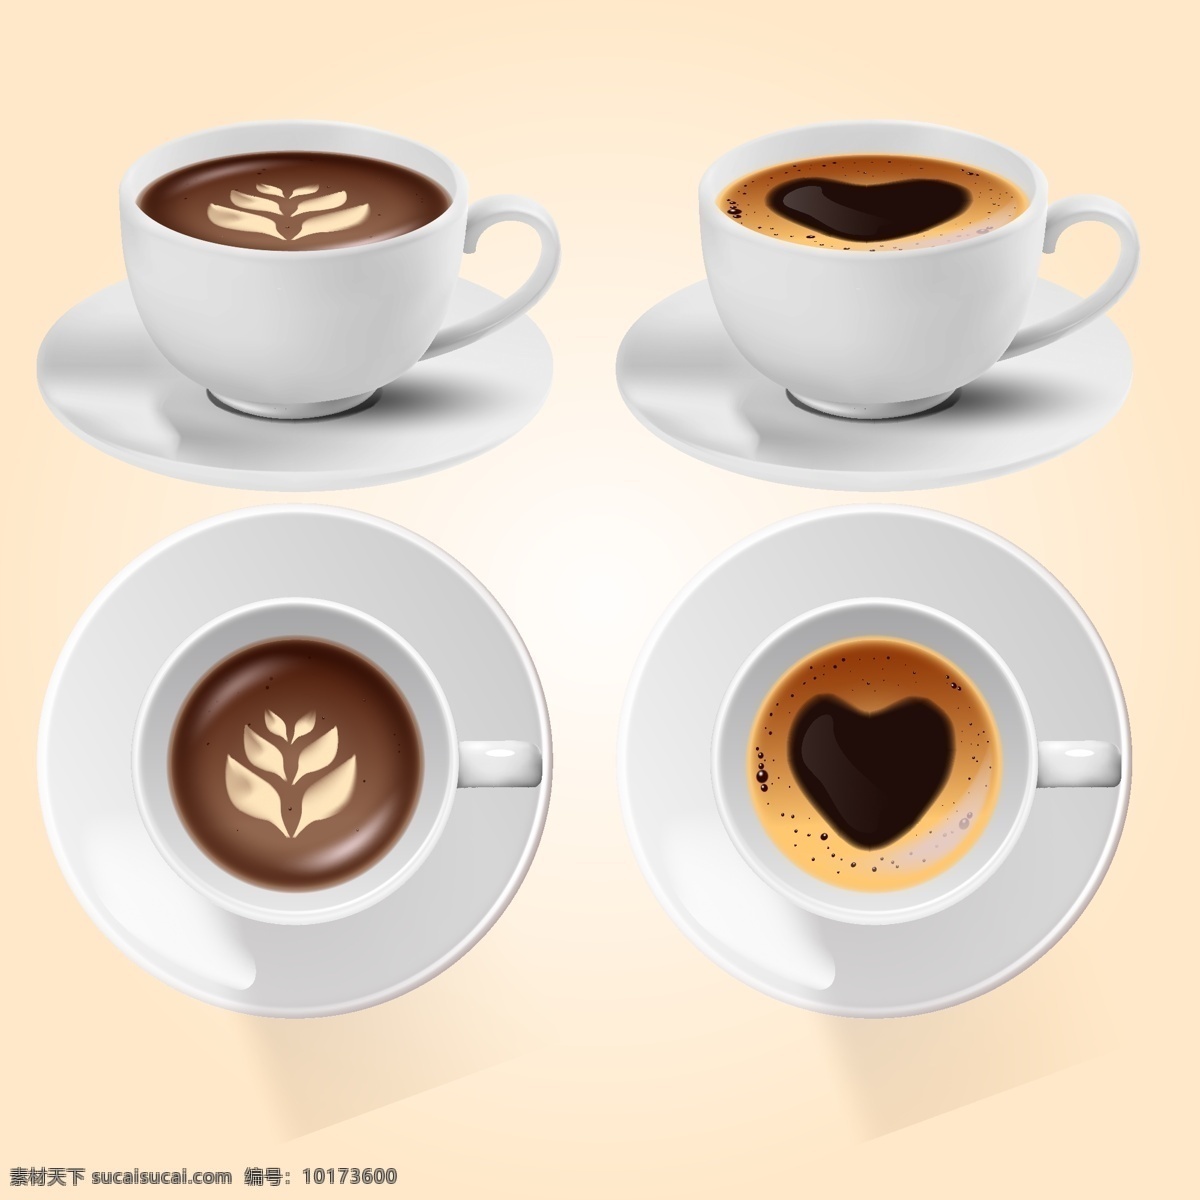 摩卡 咖啡 美式 双 视图 美式咖啡 拿铁 饮品 热饮 杯装咖啡 俯视咖啡杯 咖啡拉花 拉花 ai矢量 生活百科 餐饮美食